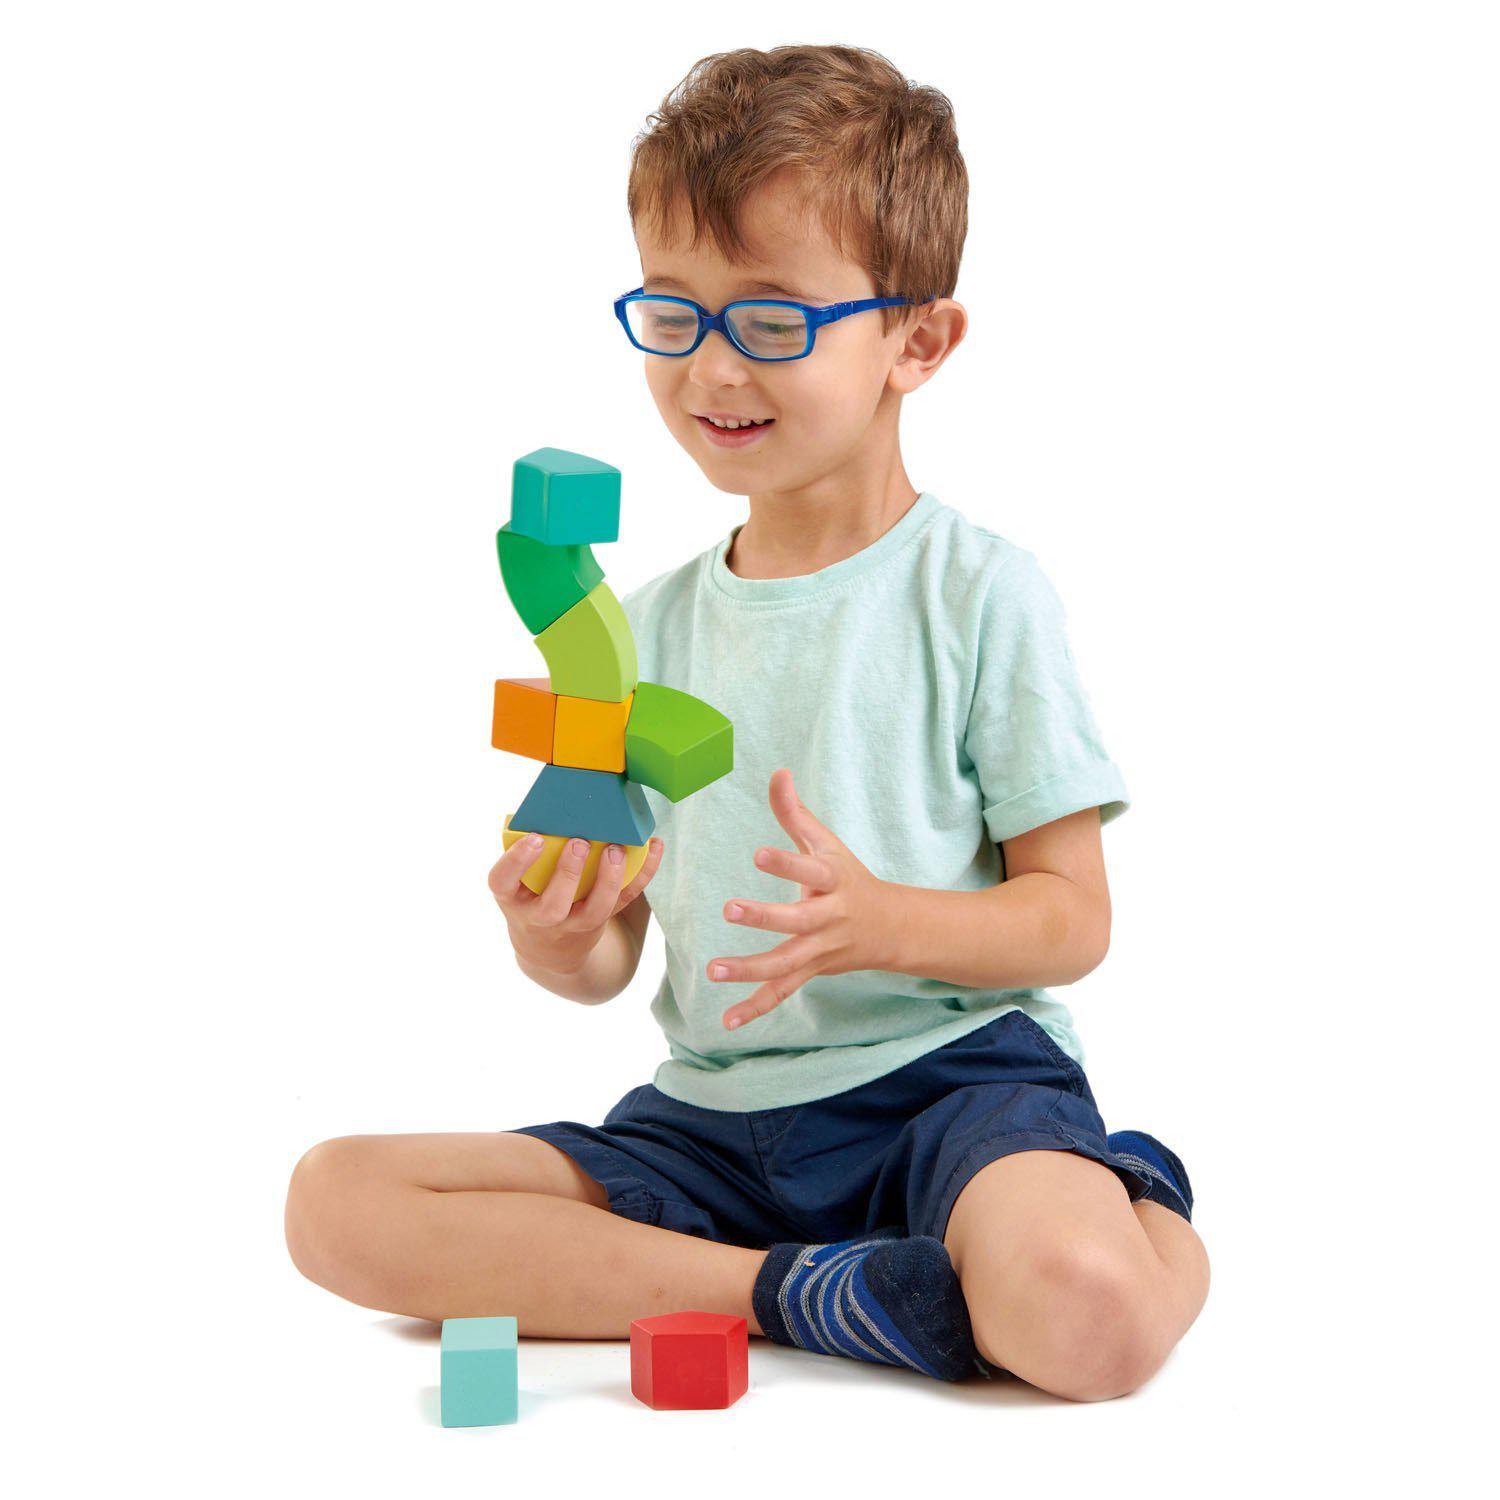 Primary Magblocks mágneses építő játék, din lemn premum - Primary Magblocs - 10 darab - Tender Leaf Toys-Tender Leaf Toys-4-Játszma.ro - A maradandó élmények boltja